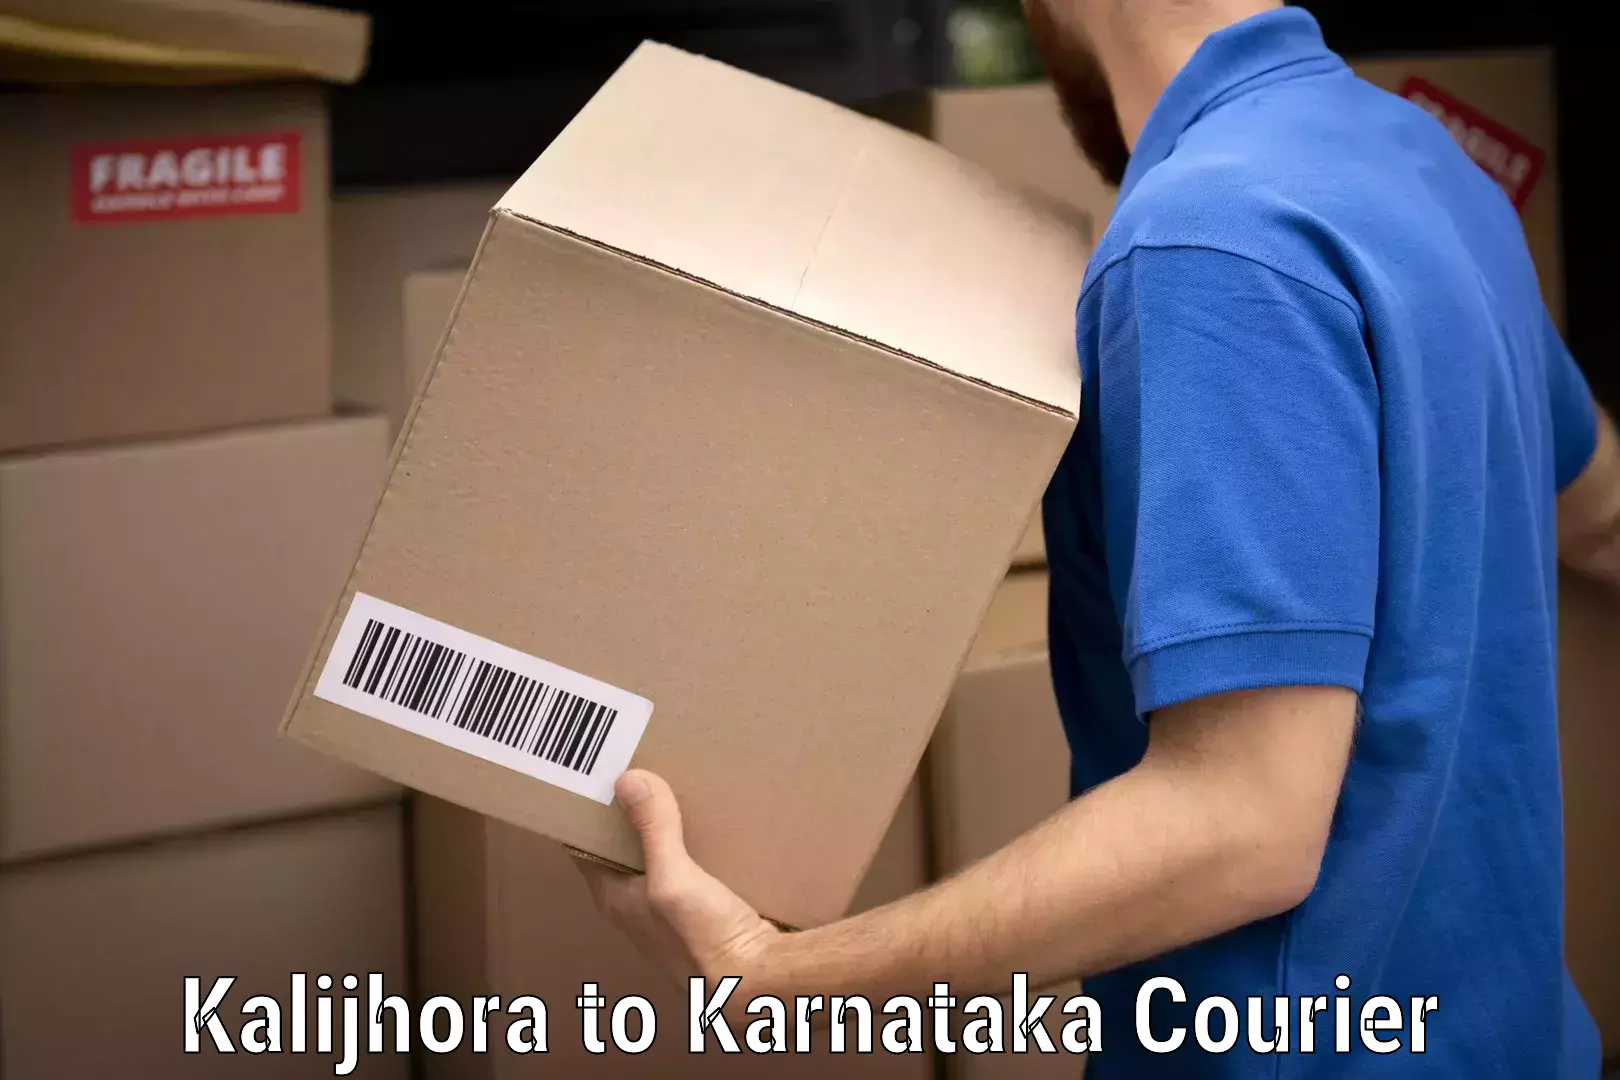 Furniture movers and packers Kalijhora to Karnataka